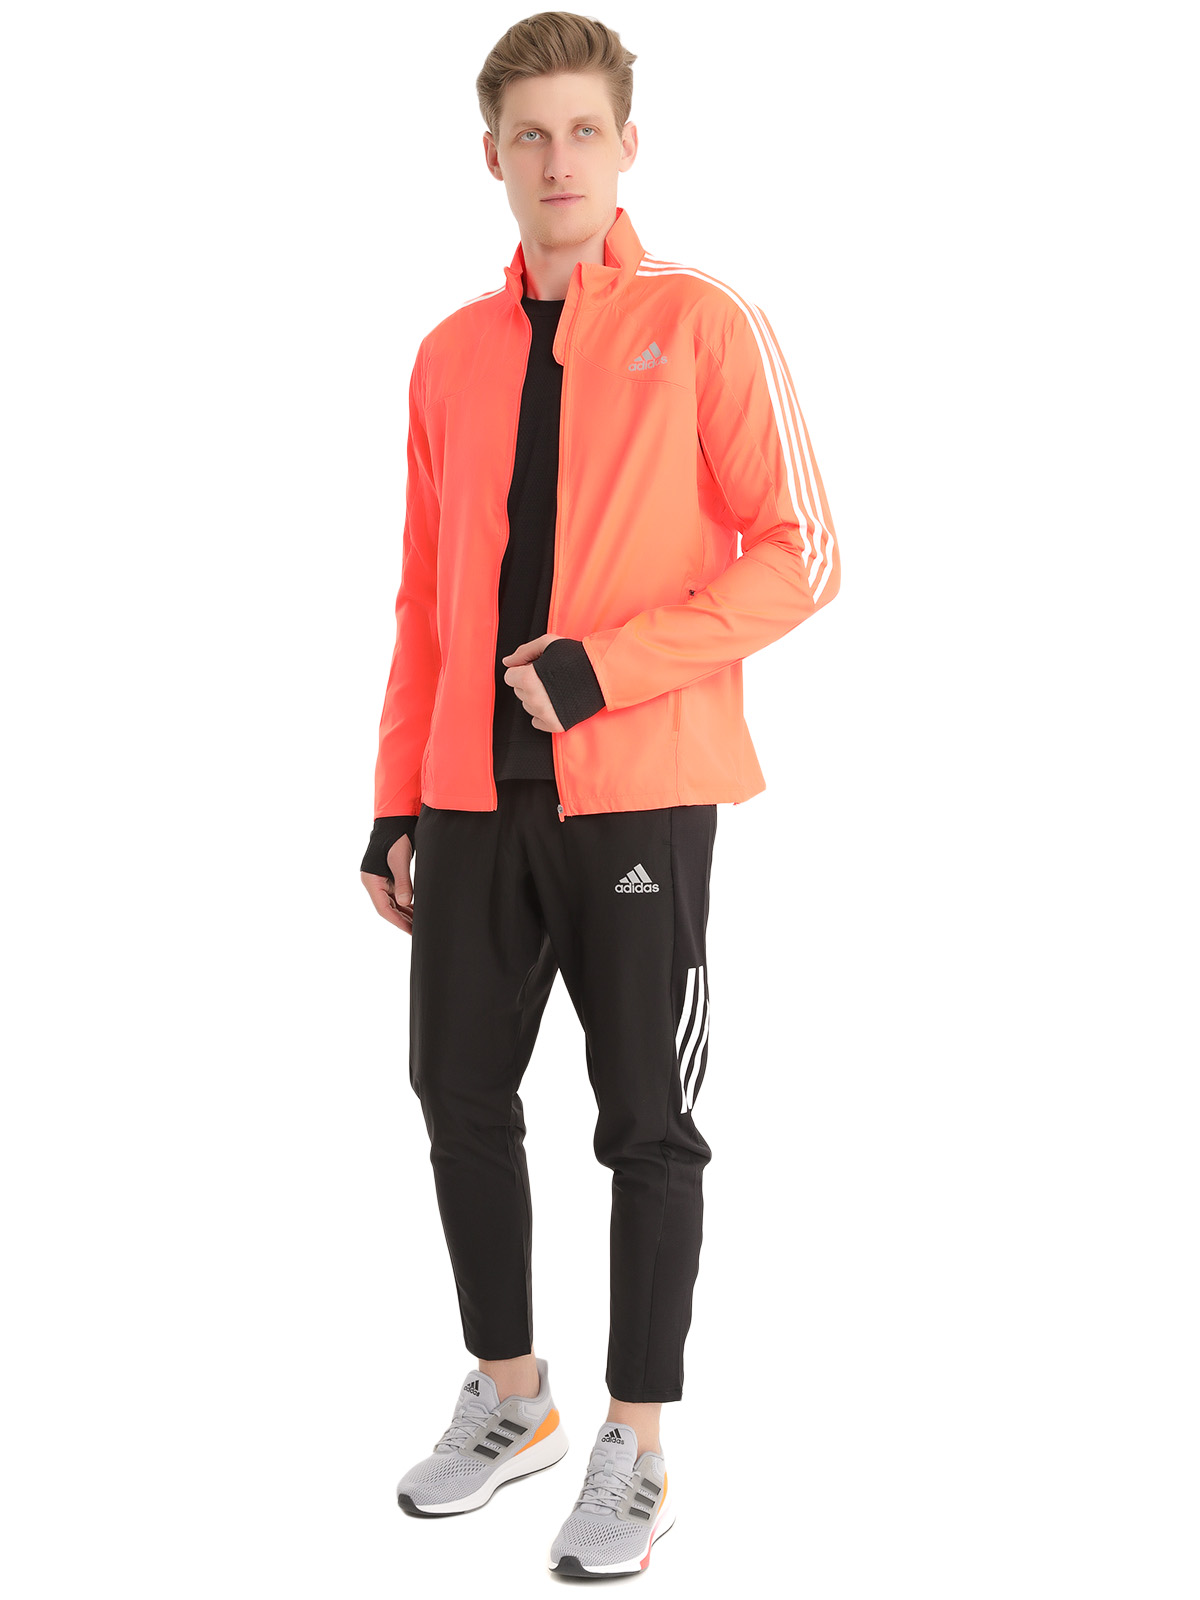 Спортивная ветровка мужская Adidas H34546 оранжевая 52; 54